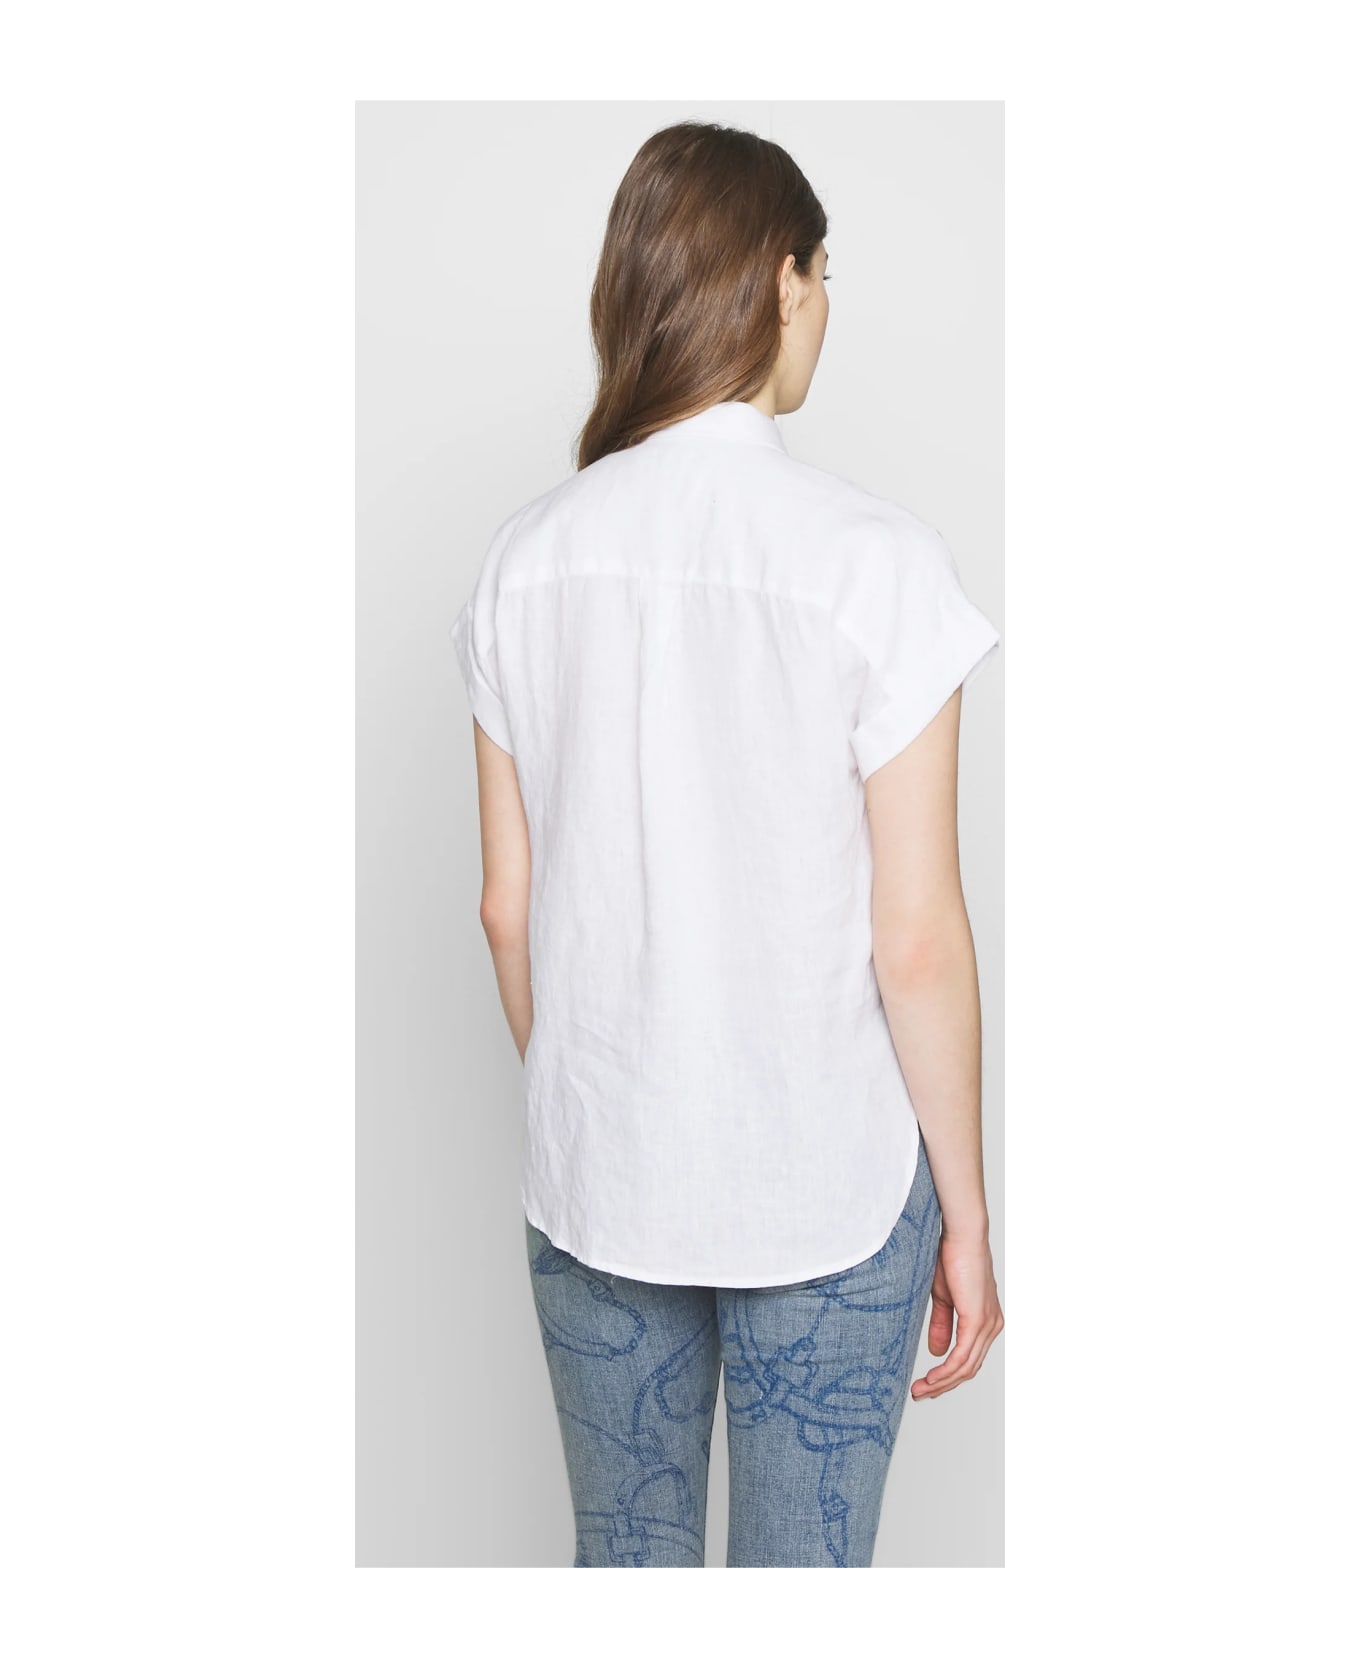 Ralph Lauren Broono Short Sleeve Shirt - White